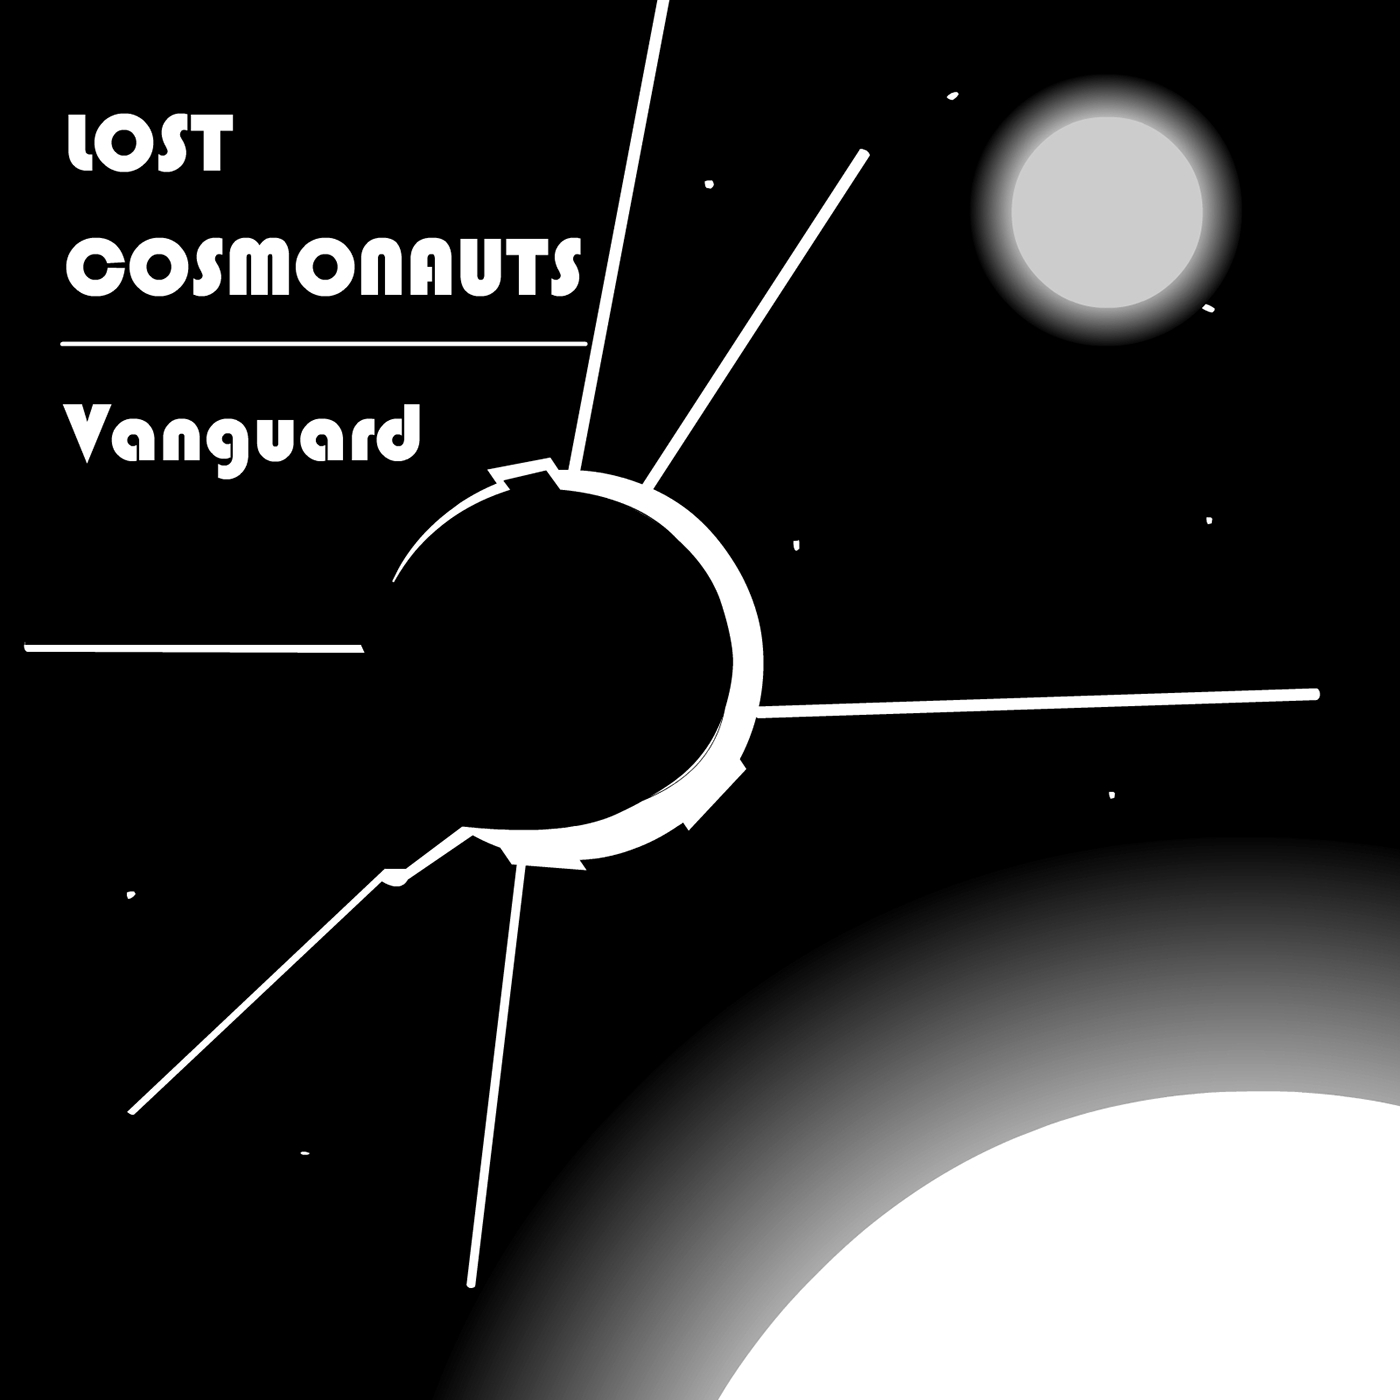 Space  graphic design  album art satellite astronaut Lost Cosmonauts